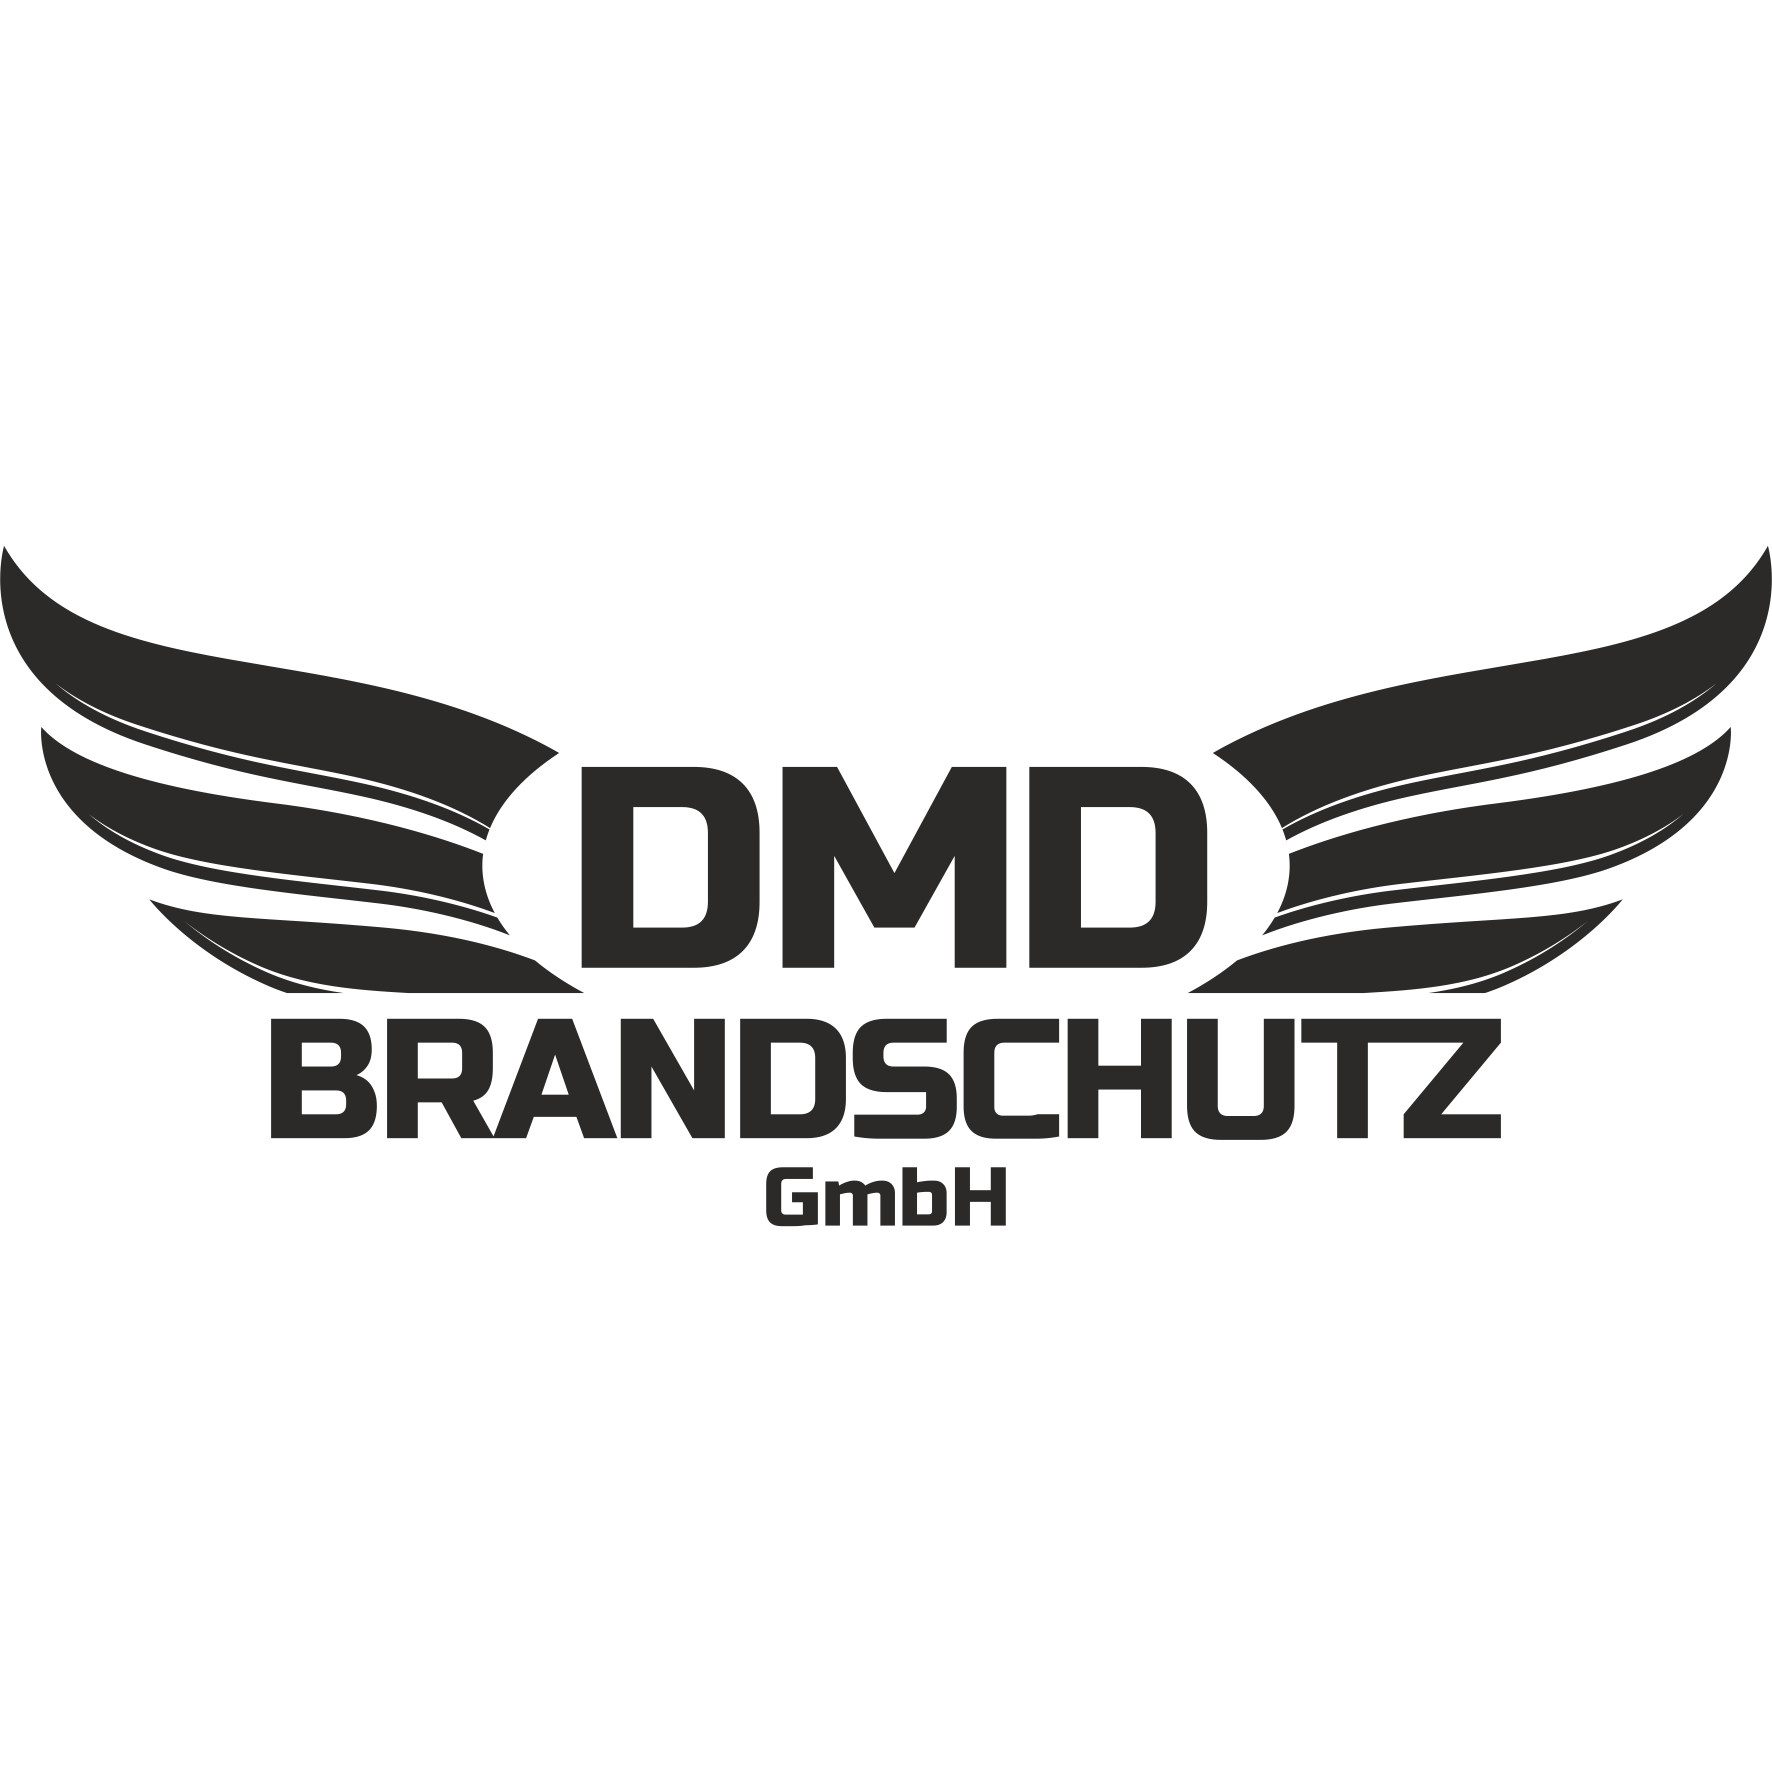 DMD-Brandschutz GmbH  